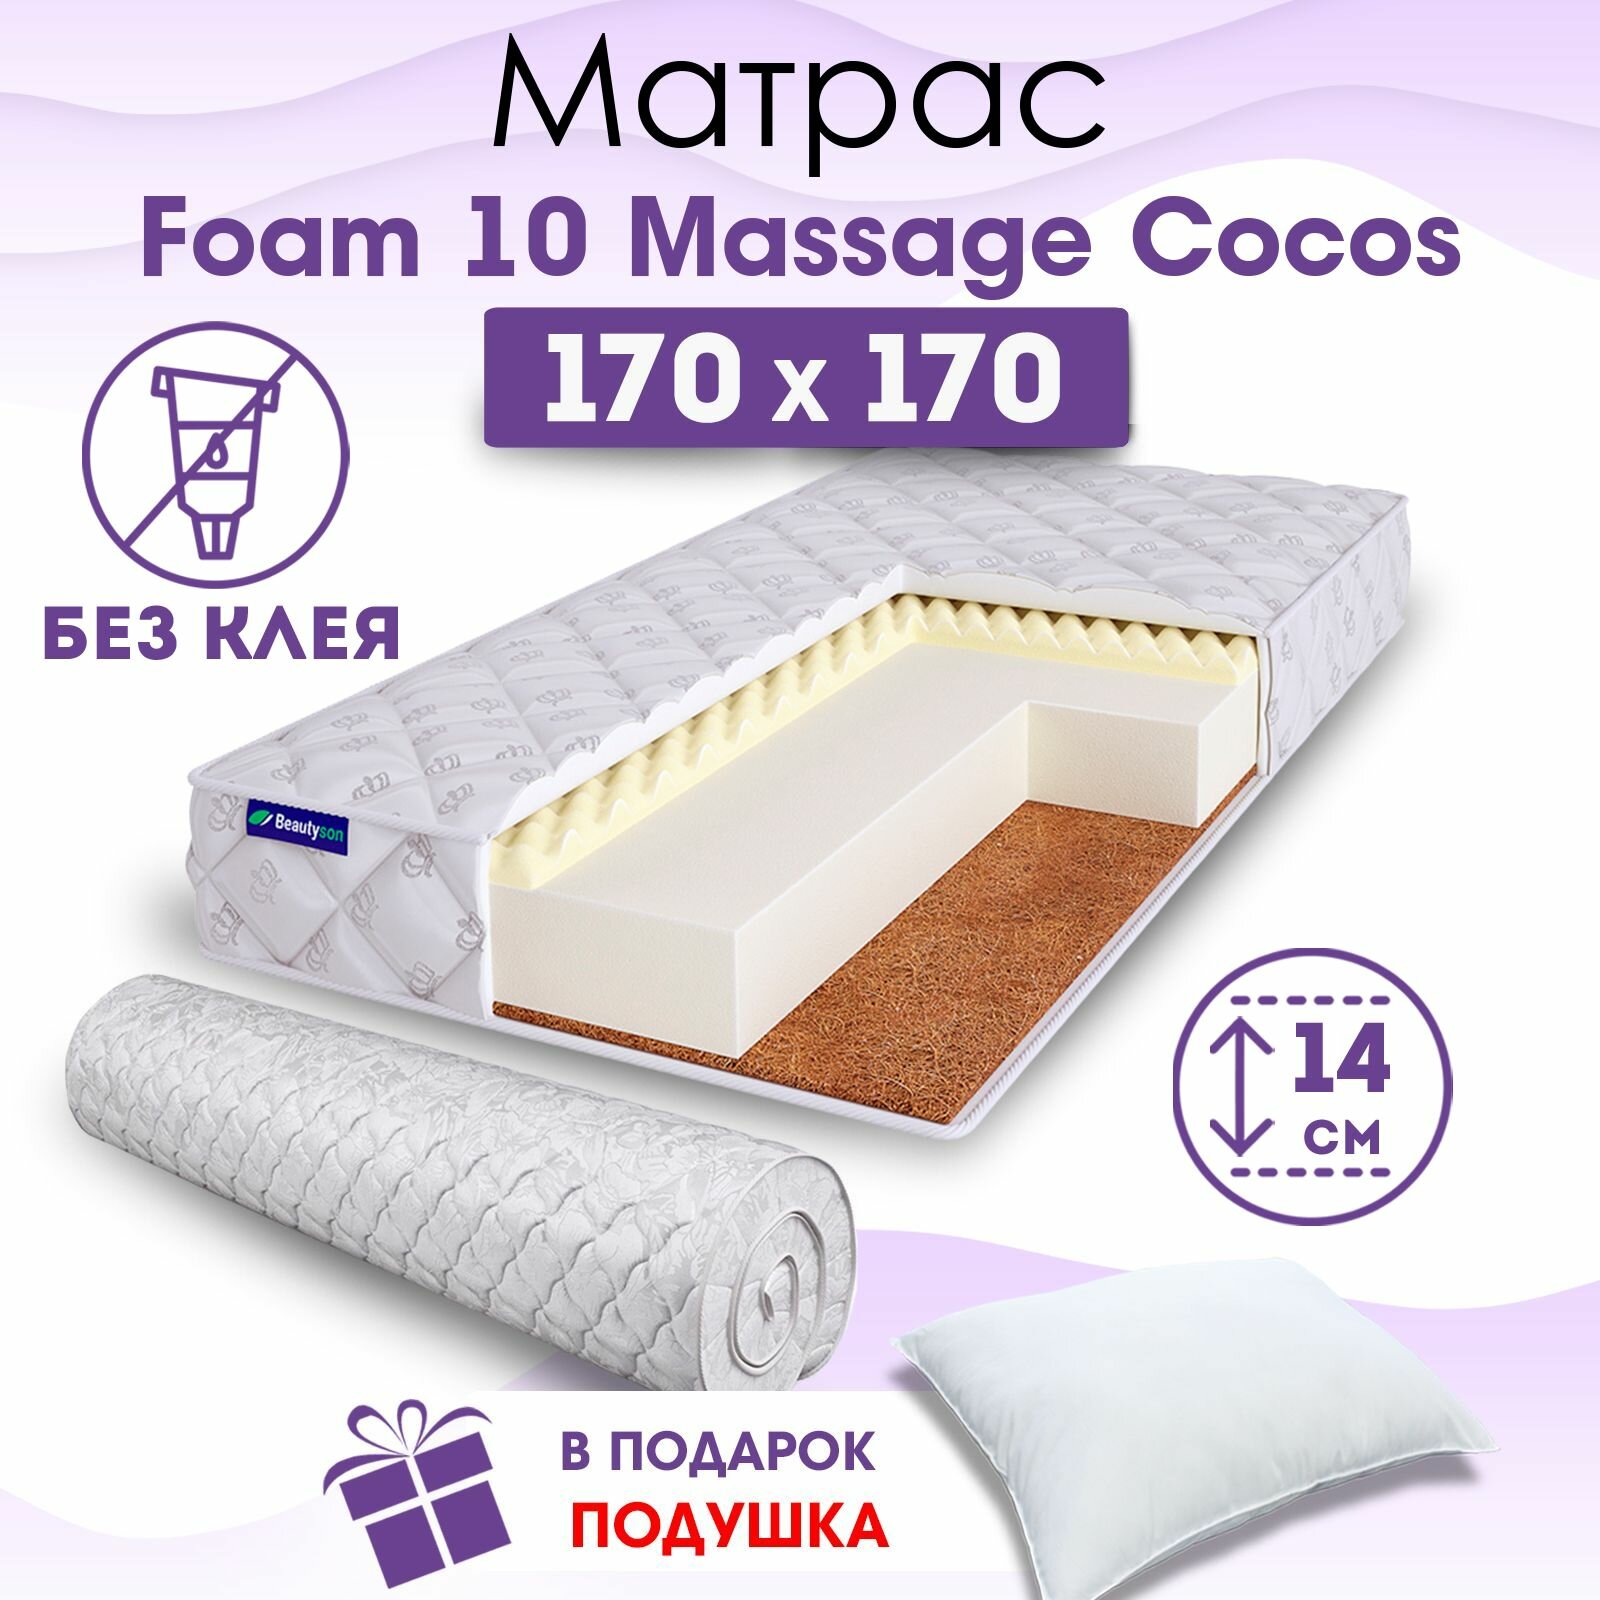 Ортопедический матрас Beautyson Foam 10 Massage Cocos без клея, 170х170, 14 см, беспружинный, двухспальный, на кровать, для дивана, мягкий, не высокий